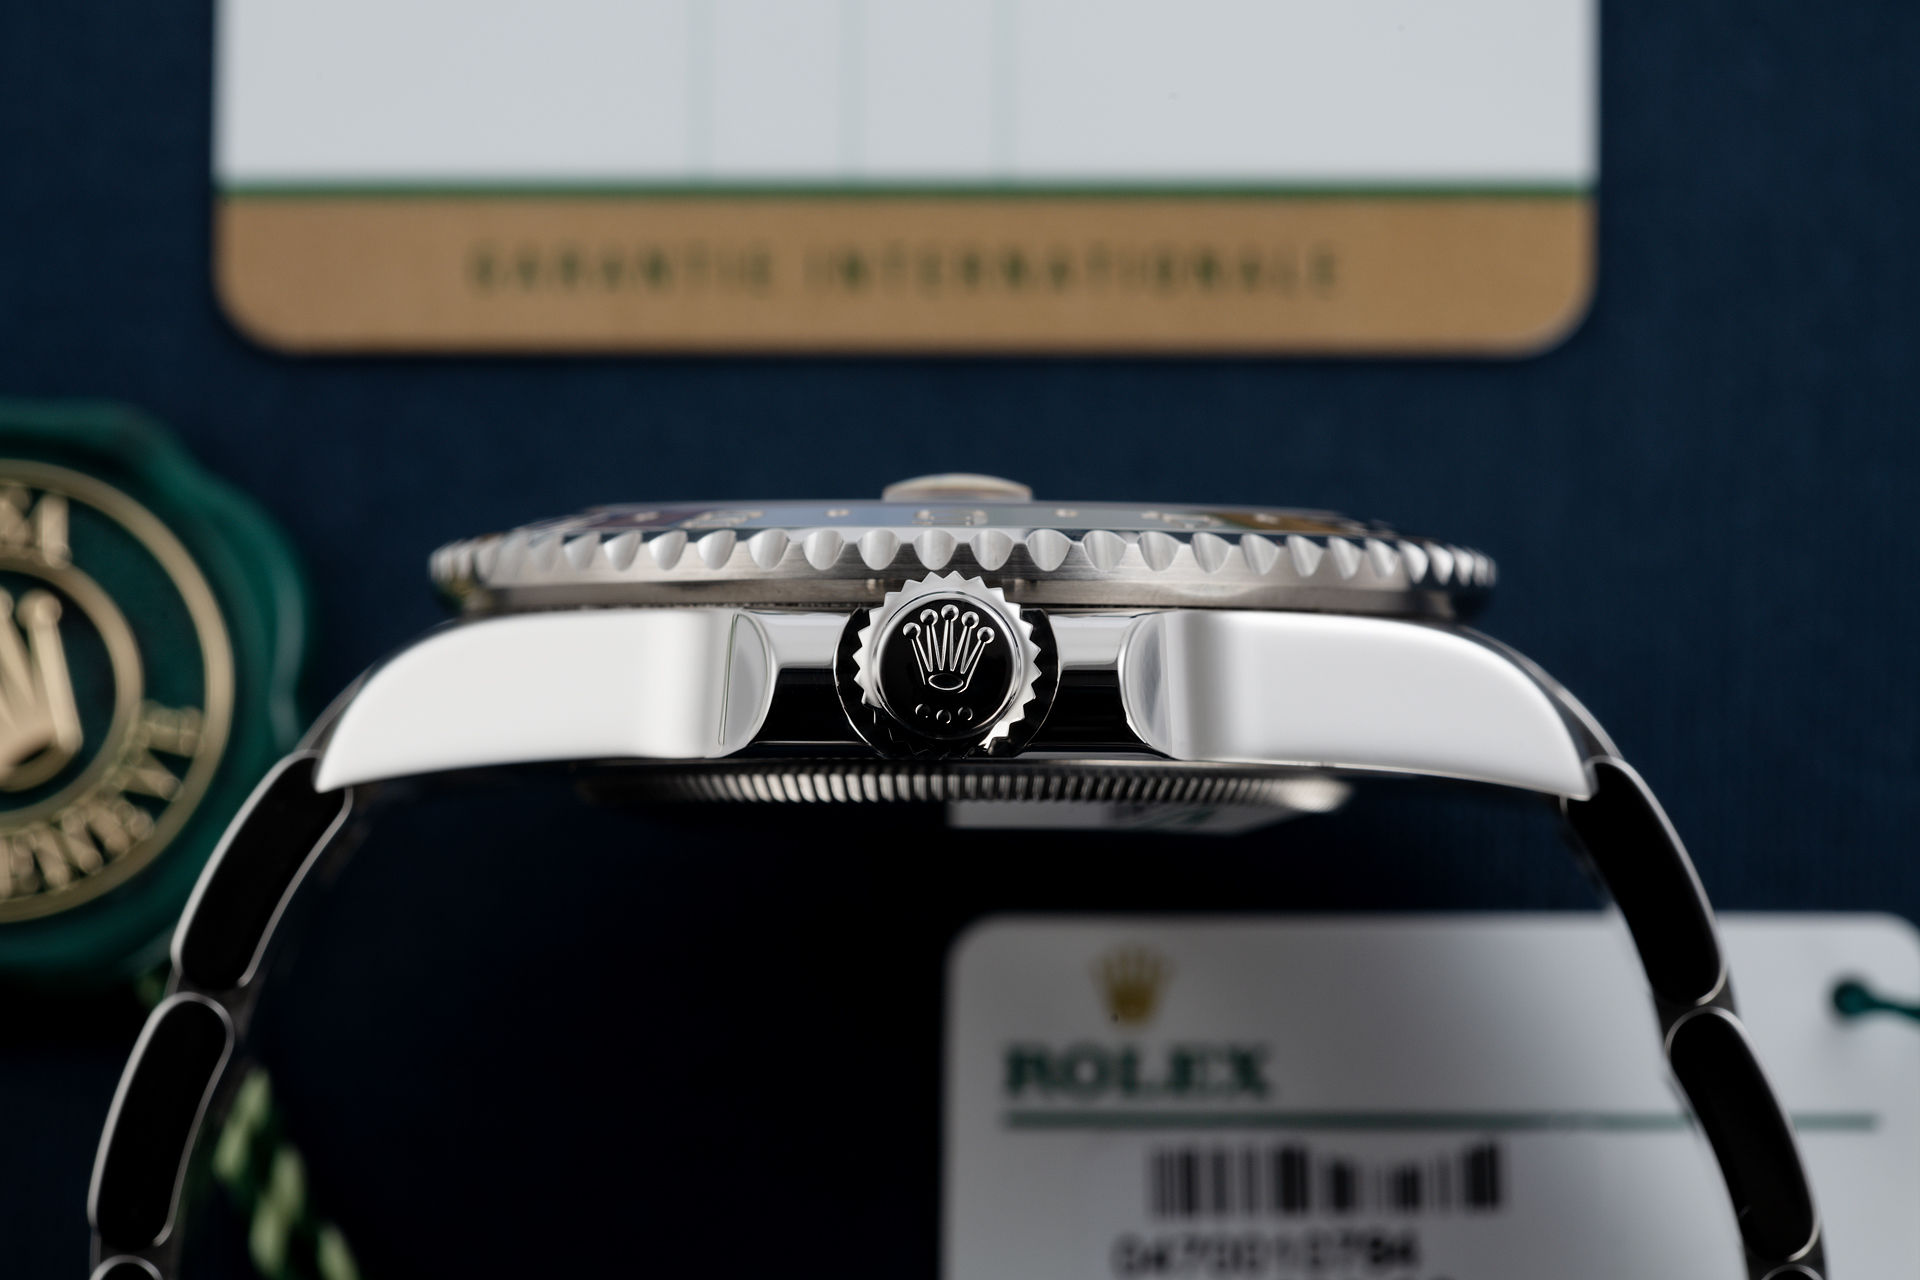 ref 116710BLNR | Under Rolex 5 Year Warranty | Rolex GMT-Master II